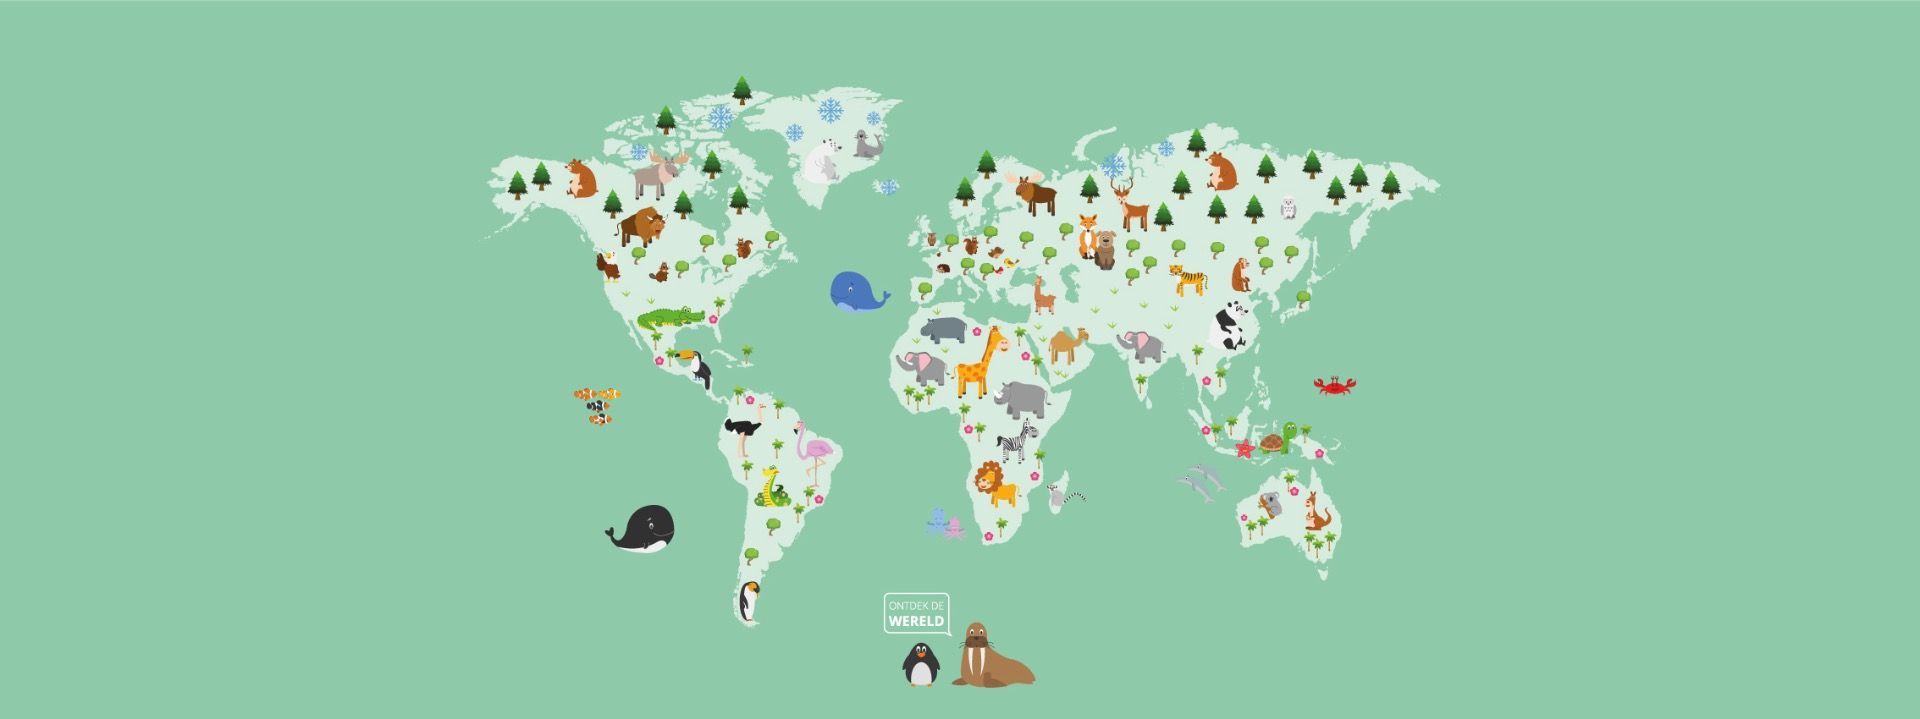 Graveren stel je voor Korst Behang met een wereldkaart voor kinderen in groen - Fotobehang